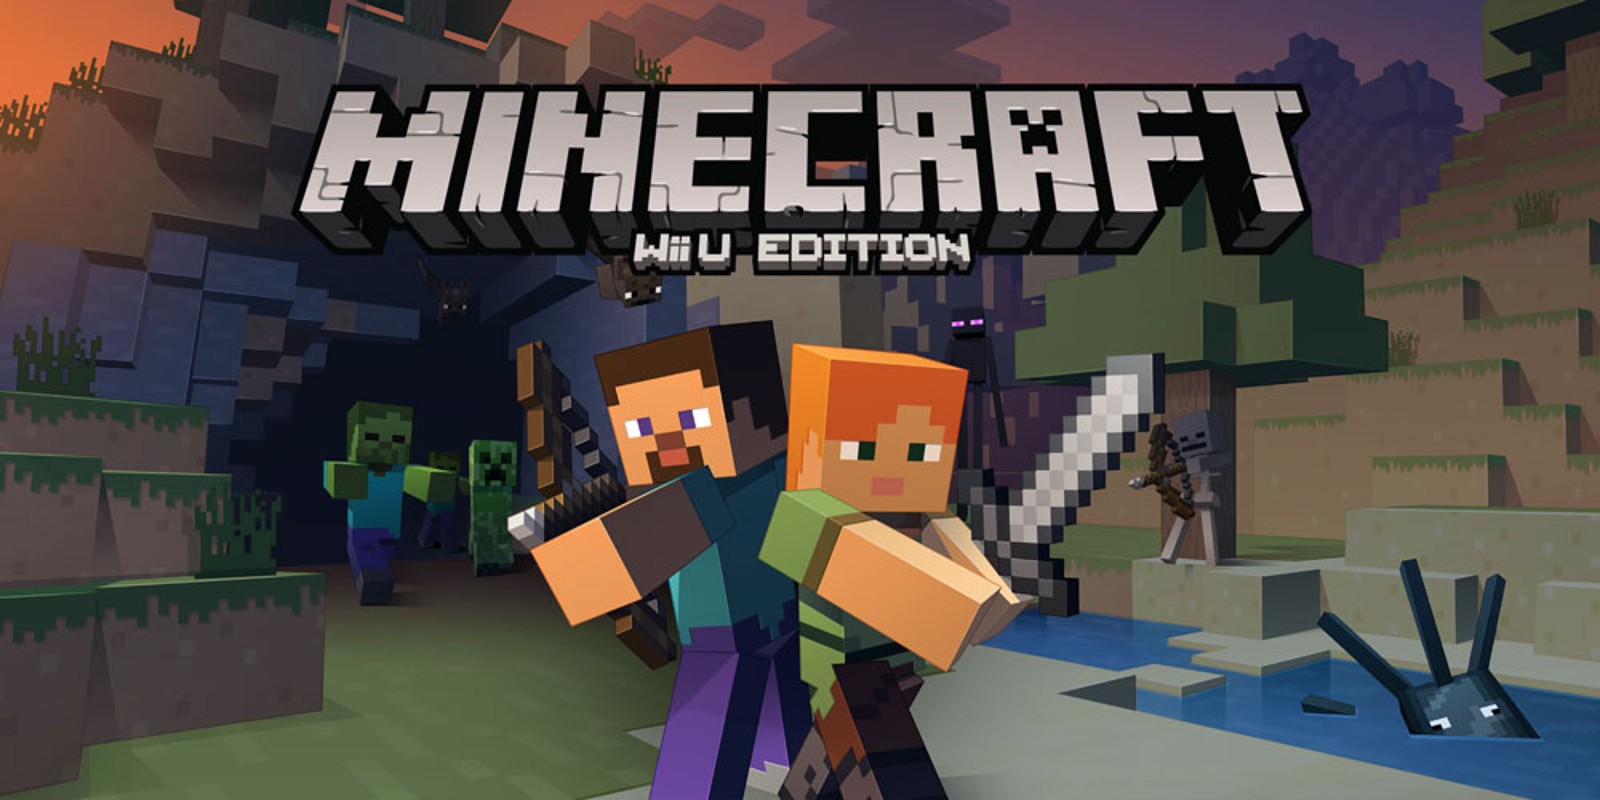 Minecraft: Wii U Edition, Aplicações de download da Wii U, Jogos